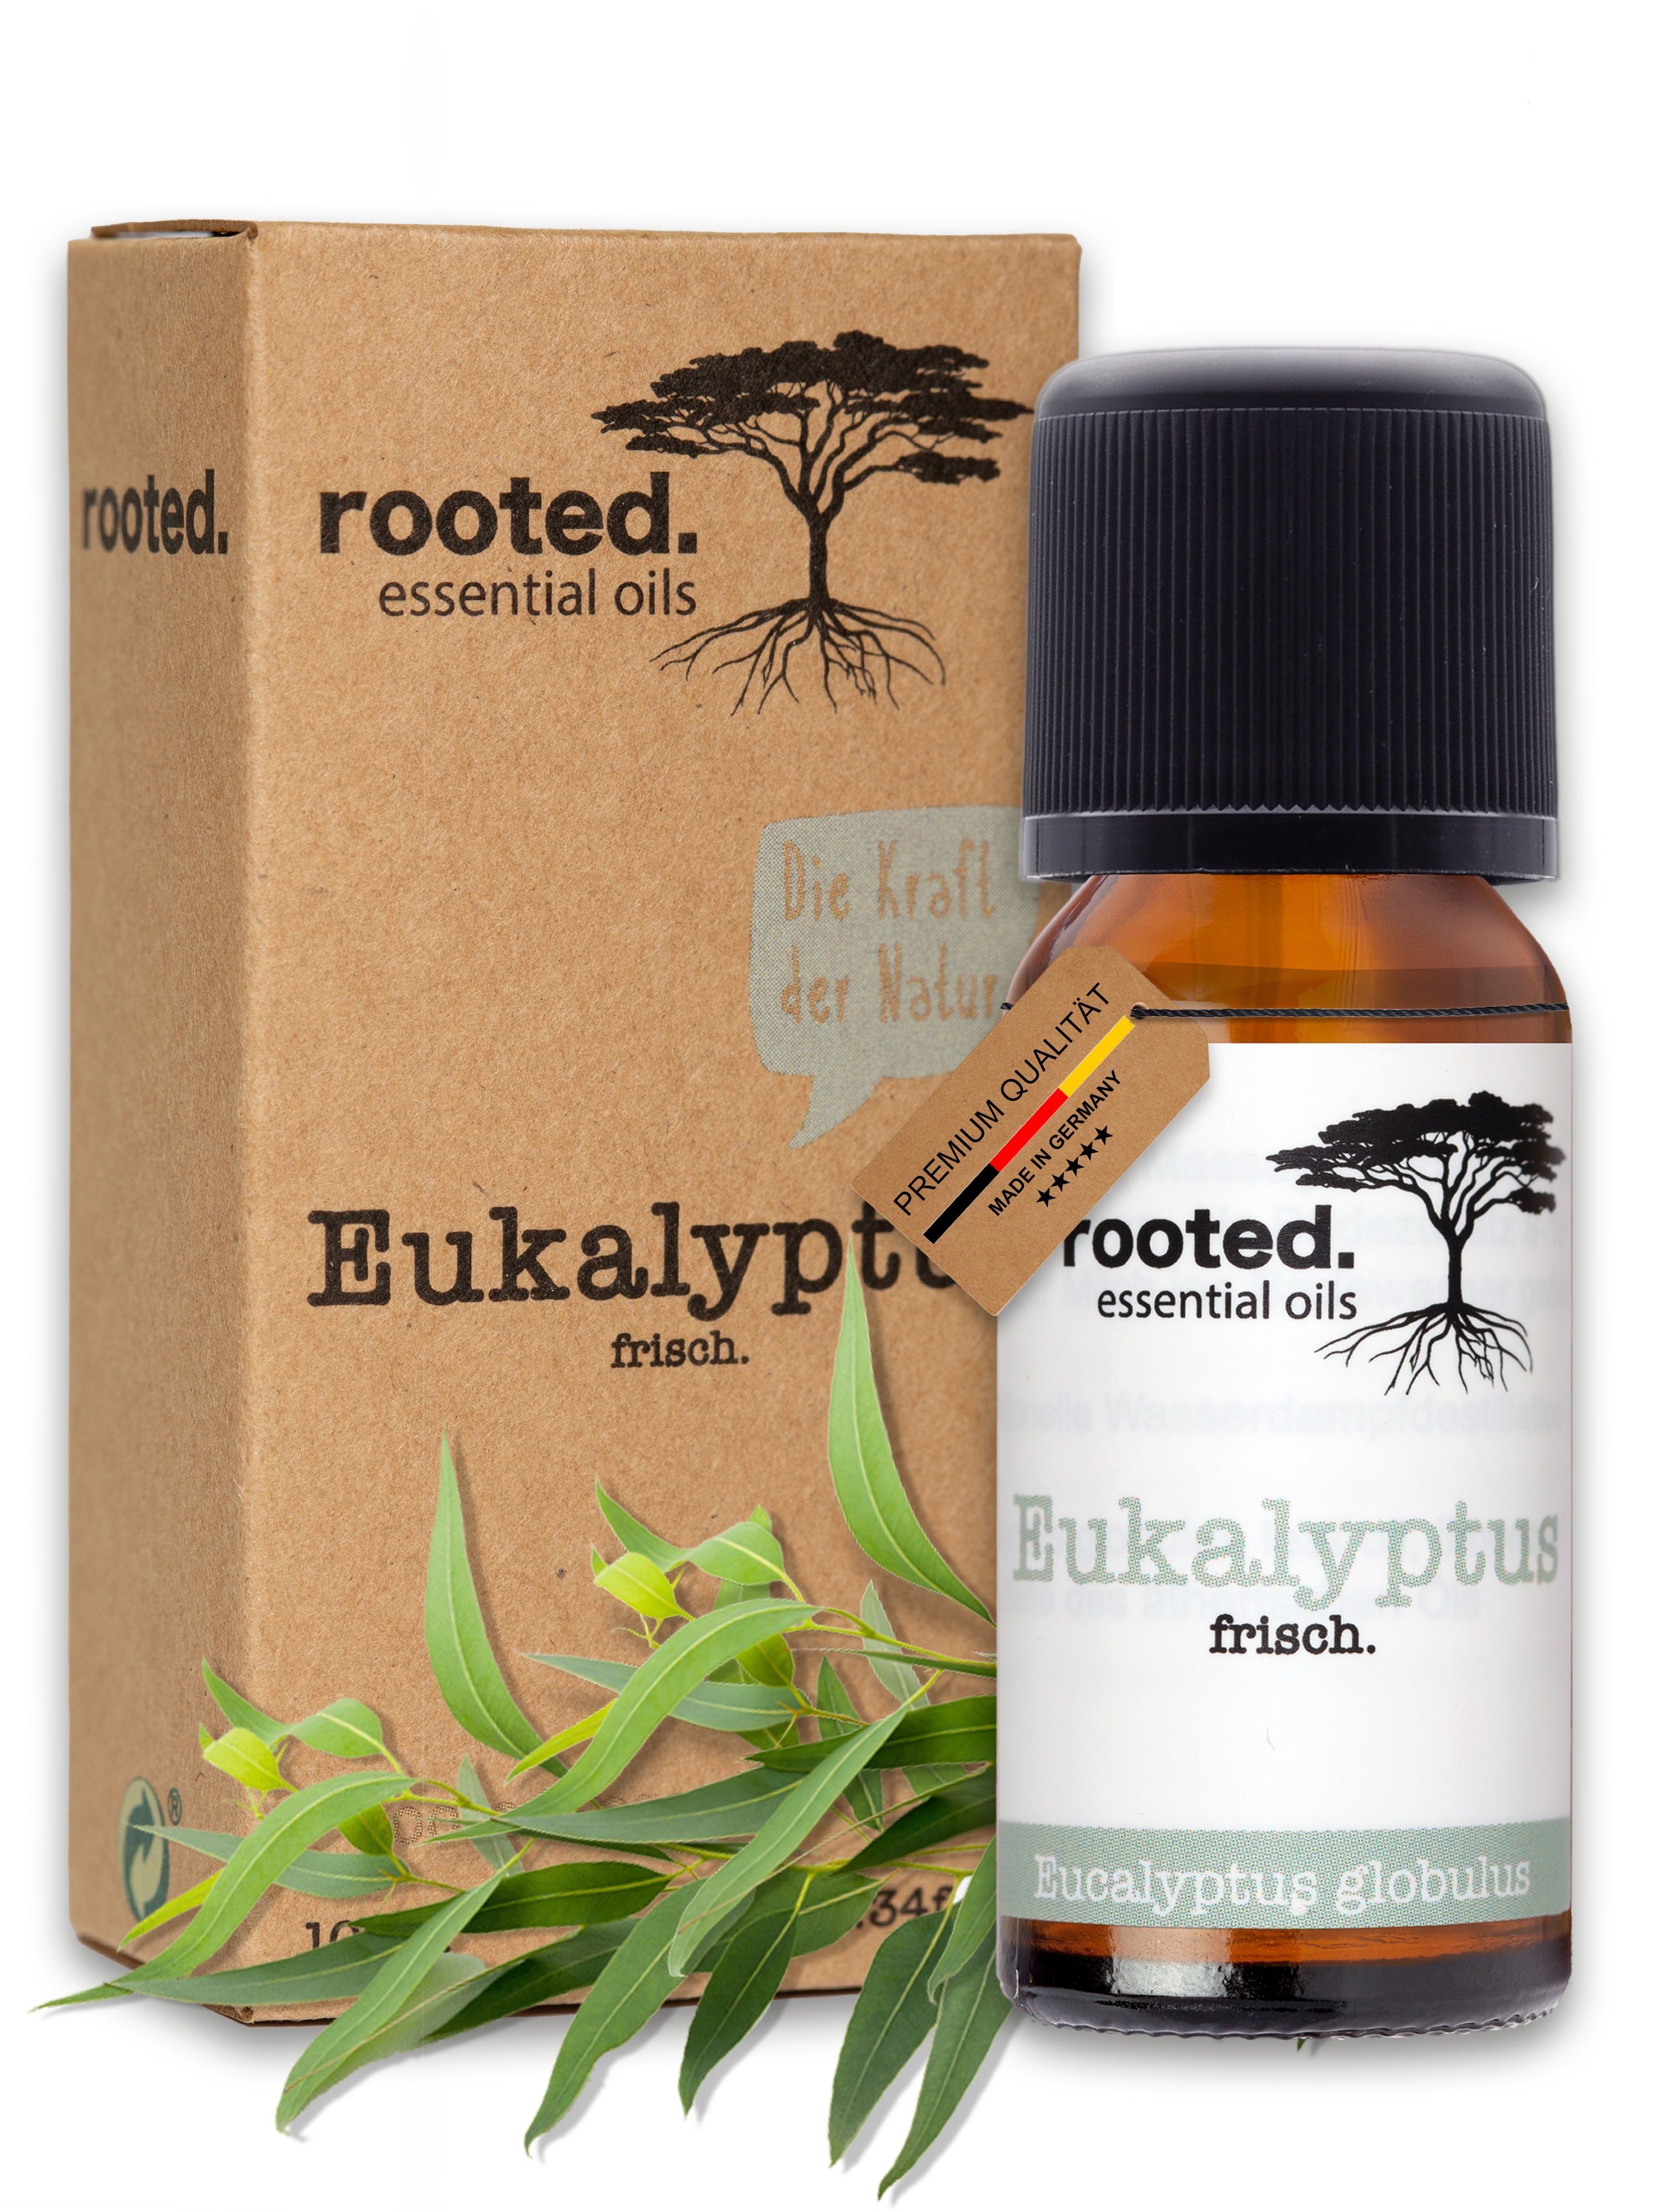 Eucalyptus globulus rooted.®, Körperöl 10ml Eukalyptusöl, rooted. ätherisches